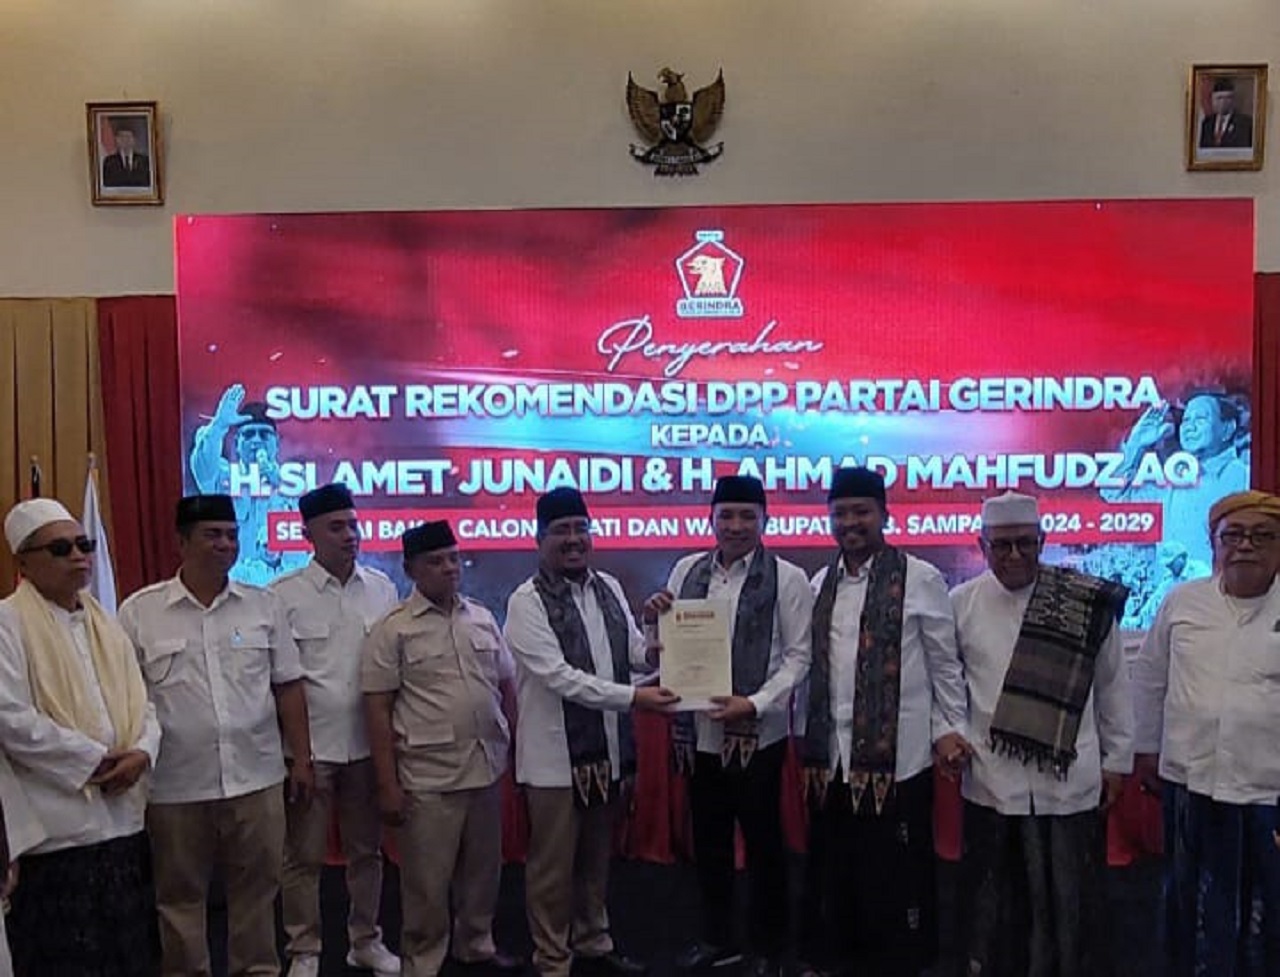 Peristiwa Rekomendasi Partai Gerindra Jatuh ke Pelaminan H. Slamet Junaidi